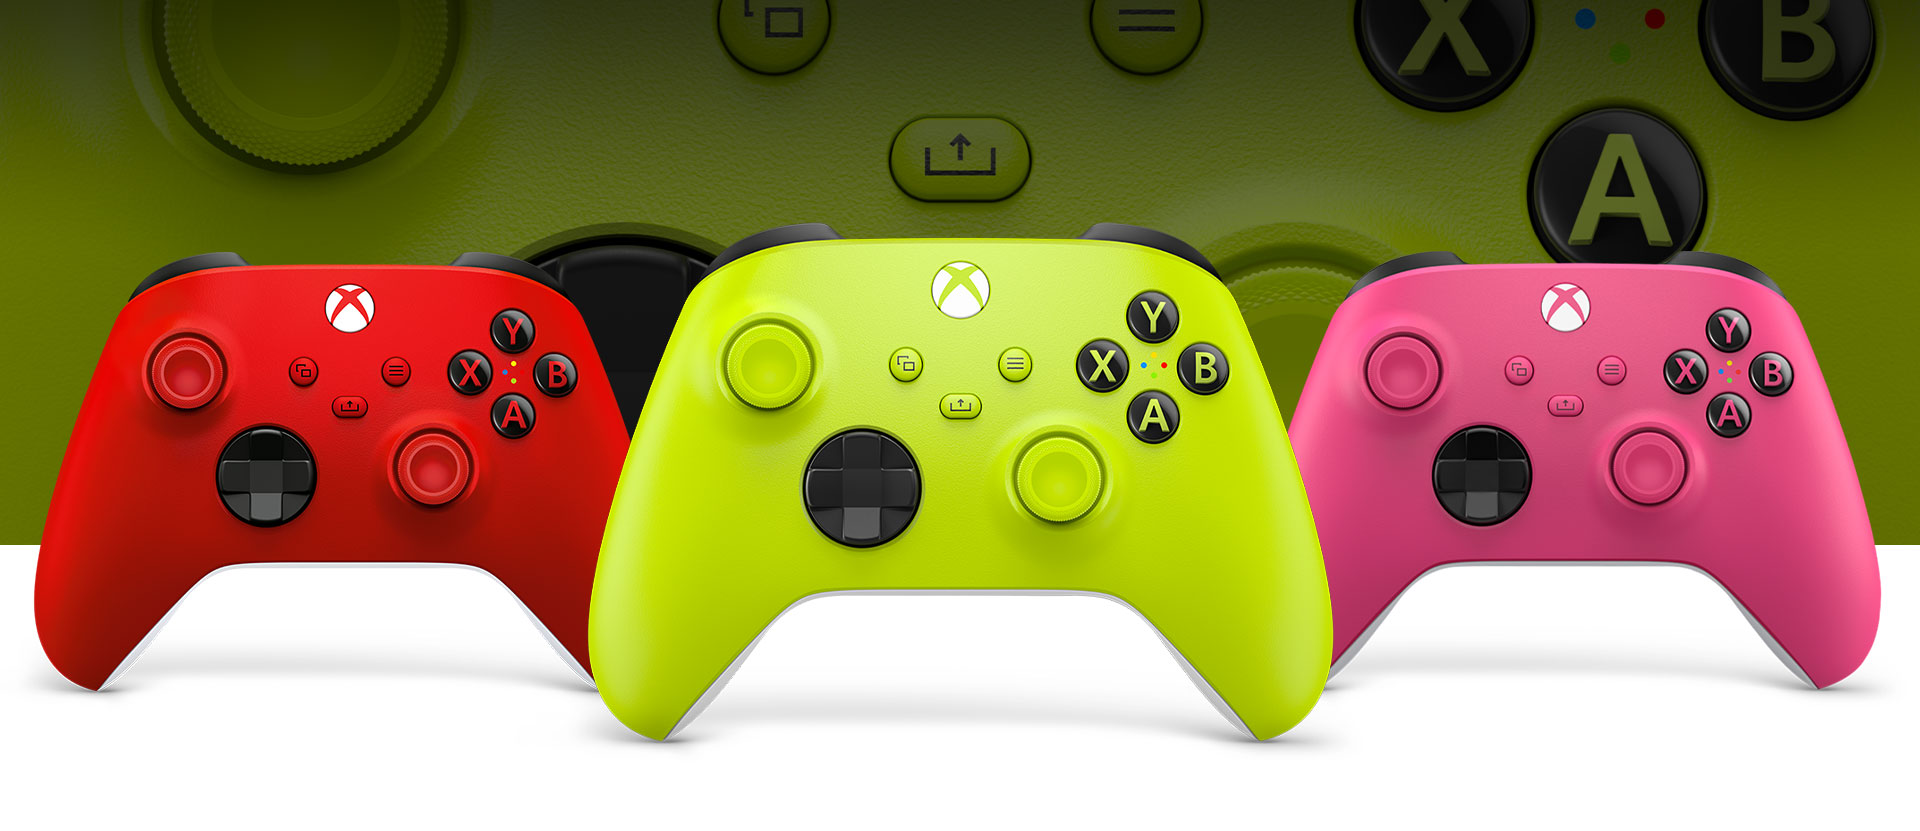 Mando inalámbrico Xbox en voltios eléctricos delante de un mando de color rojo latido a la izquierda y un mando de color rosa a la derecha